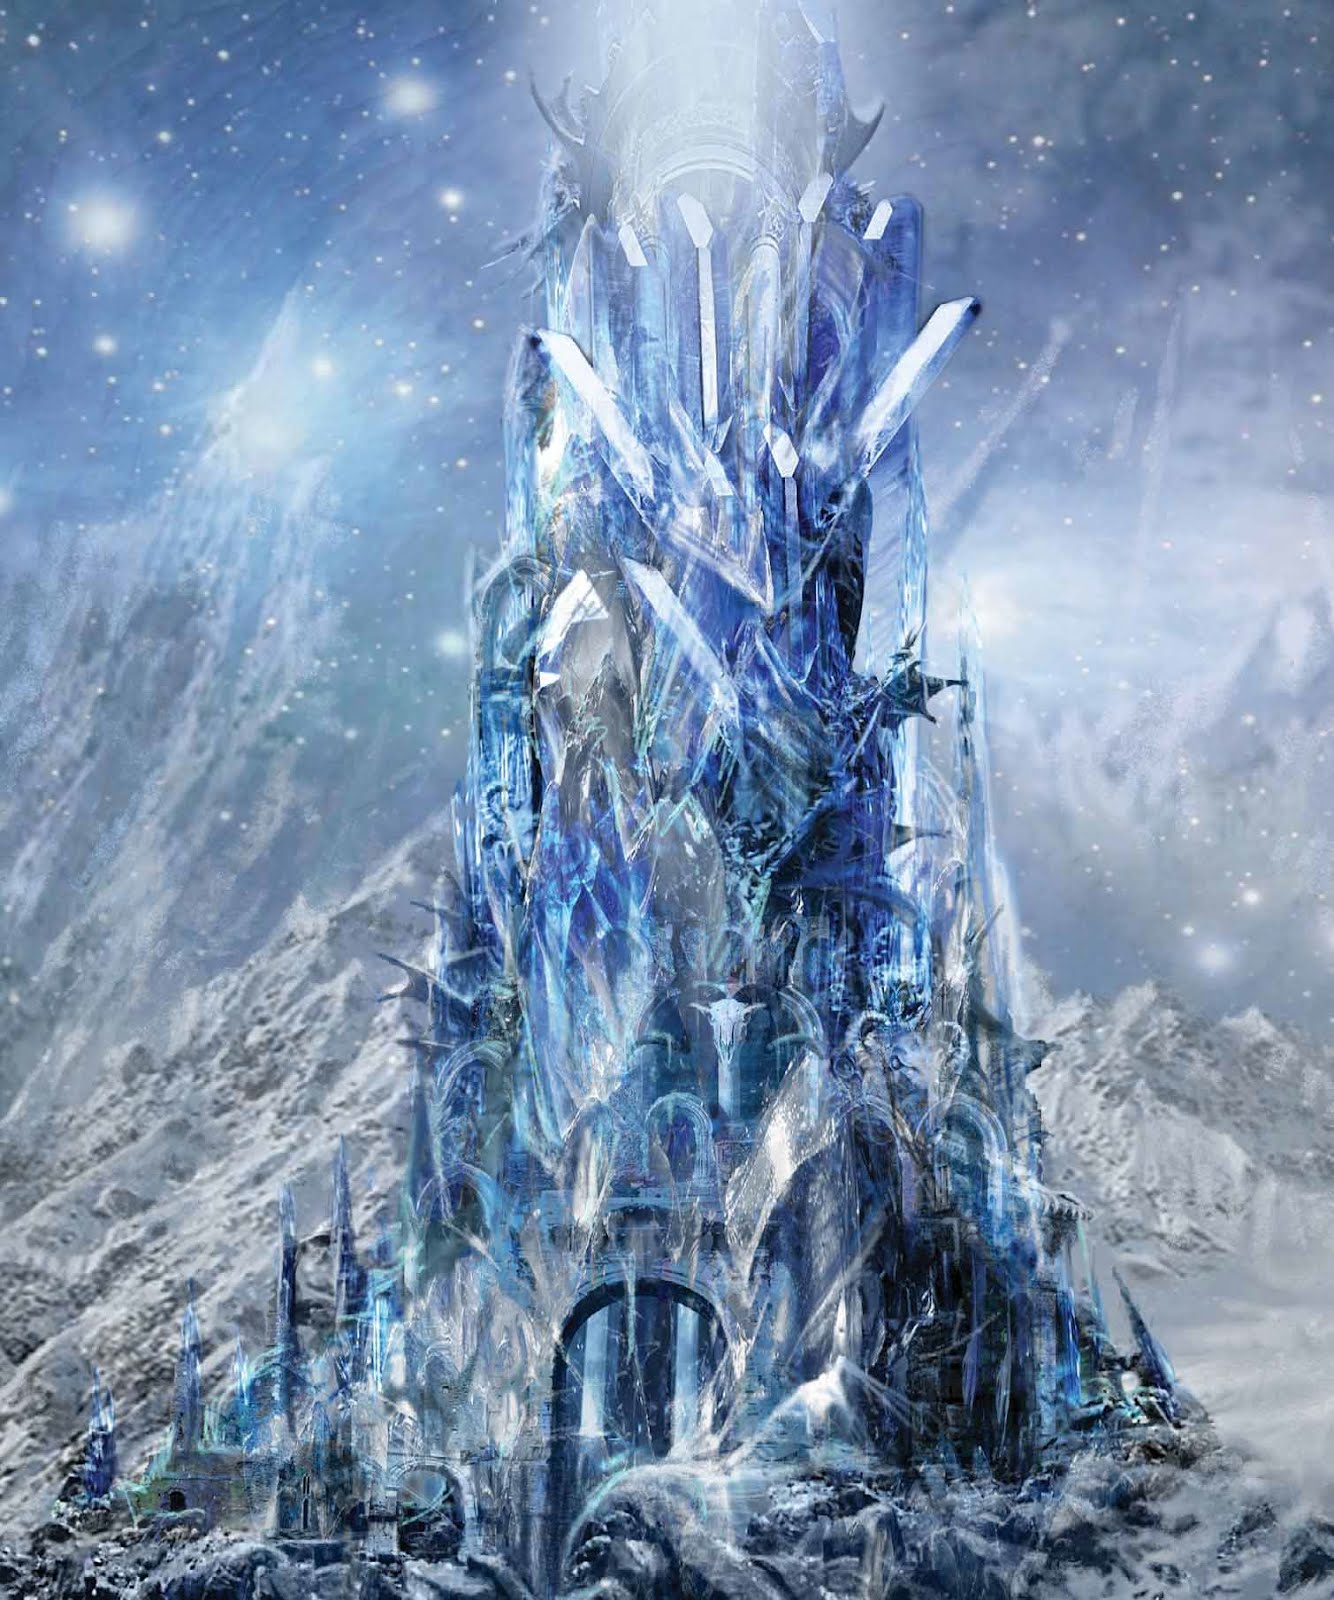 Как называется большой ледяной дворец снежной королевы. Хроники Нарнии ледяной дворец. Ледяной дворец снежной королевы. Замок снежной королевы (Ice Queen's Castle). Йотунхейм ледяной замок.